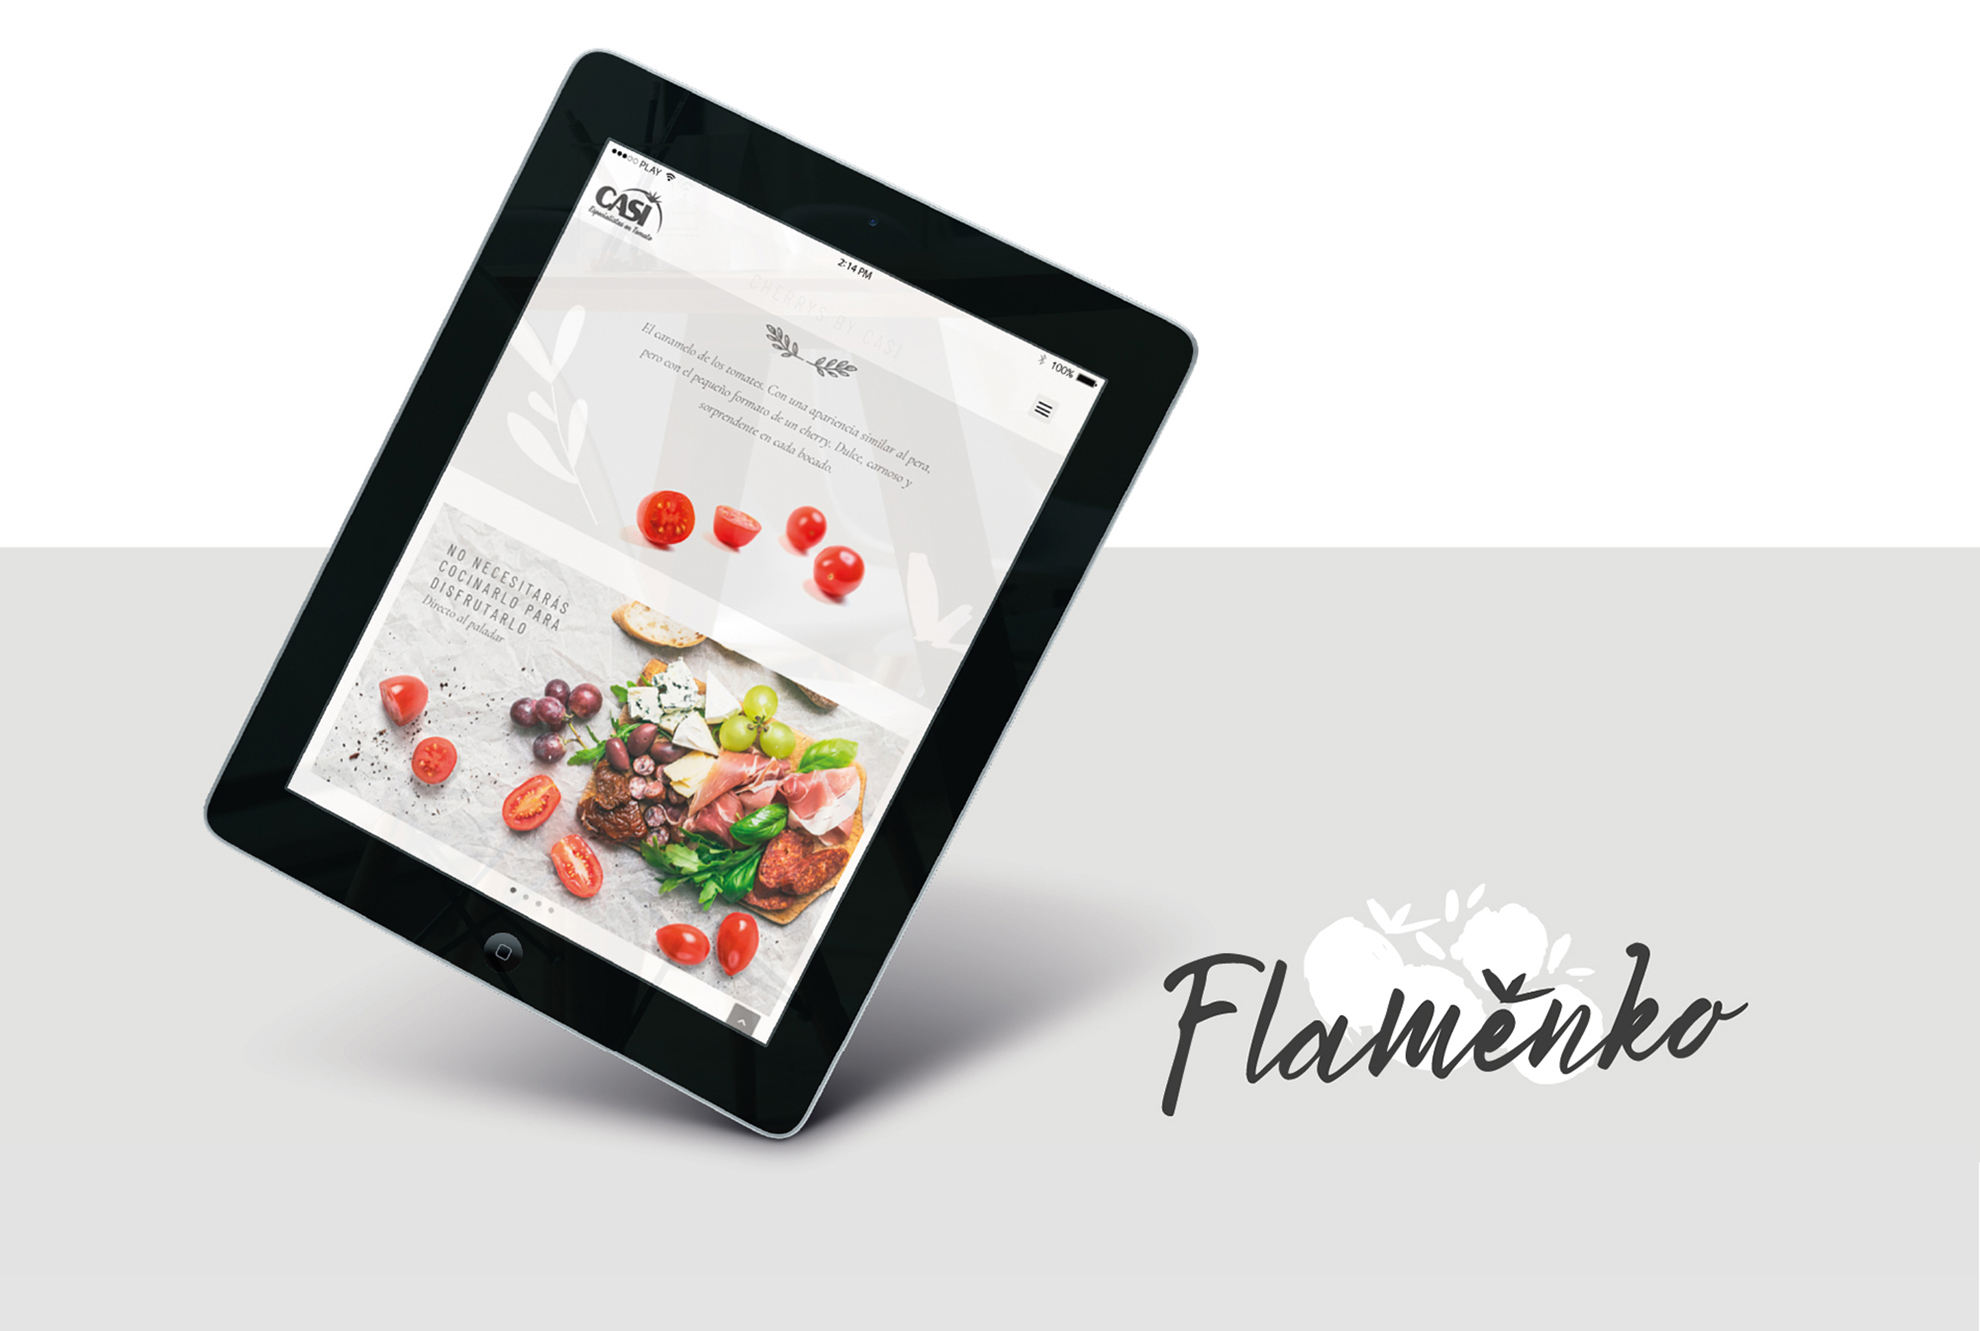 Flamenko by Casi 17 - Fama Publicidad